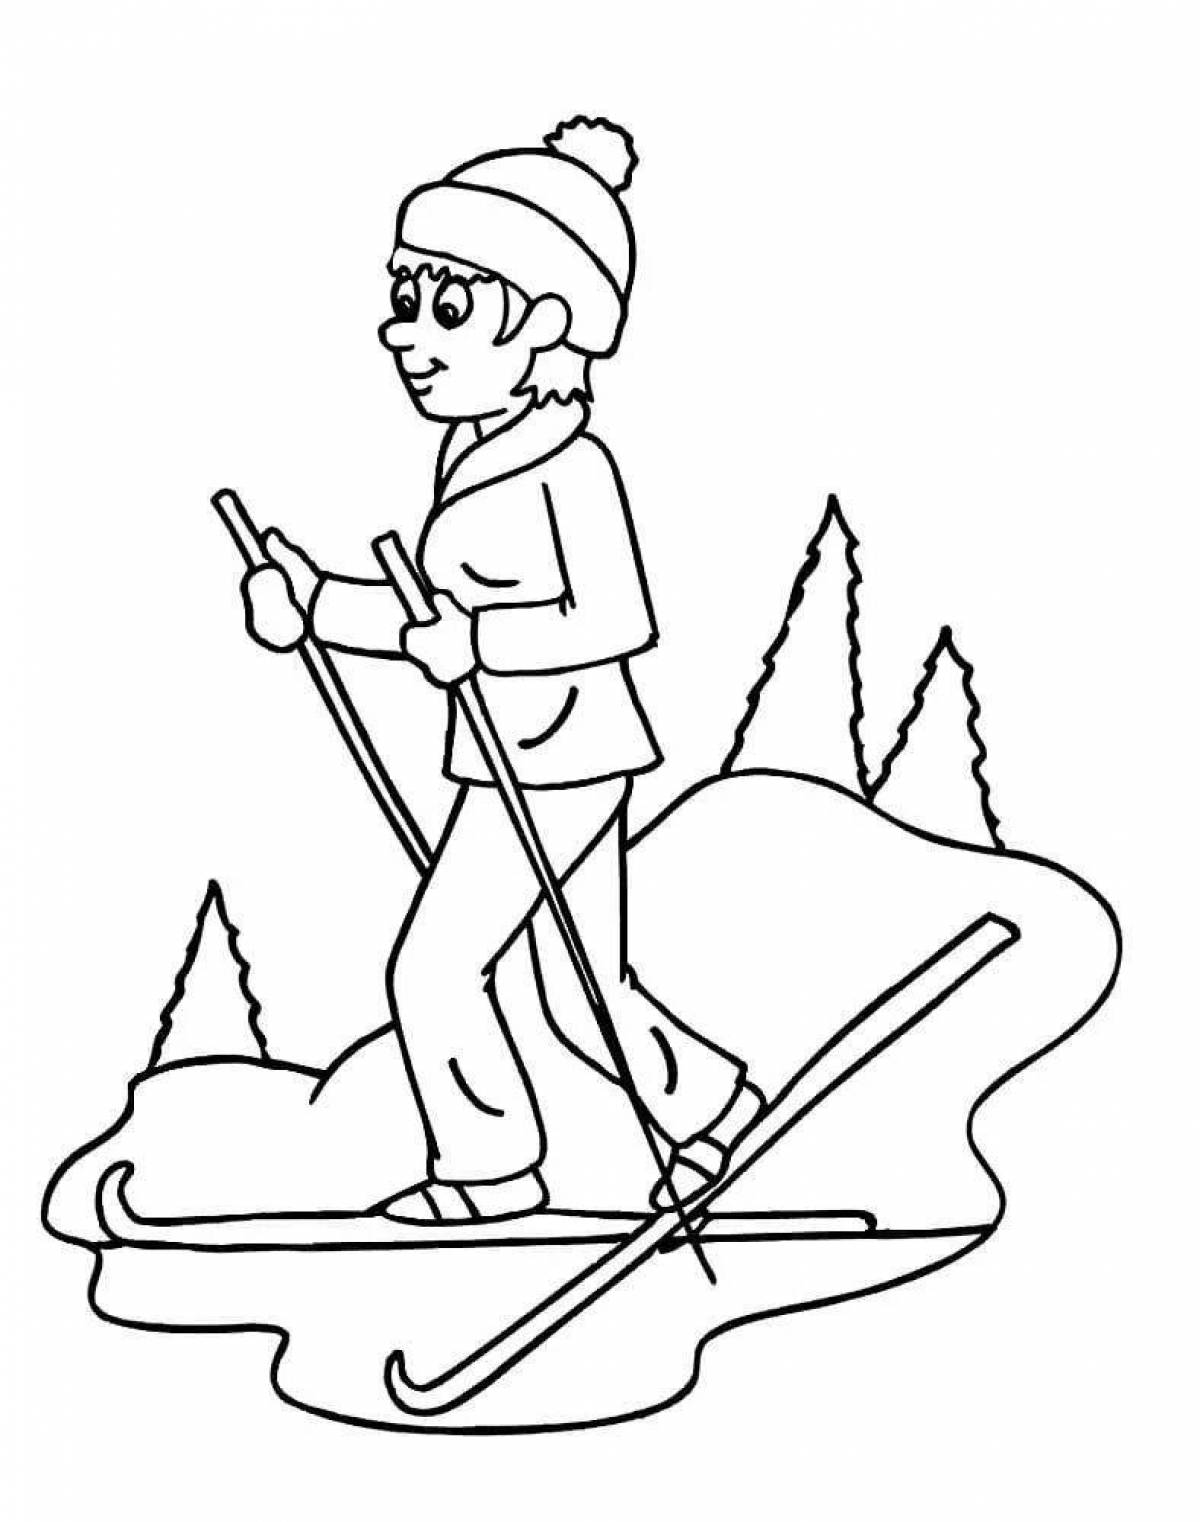 Общительный мужчина на лыжах